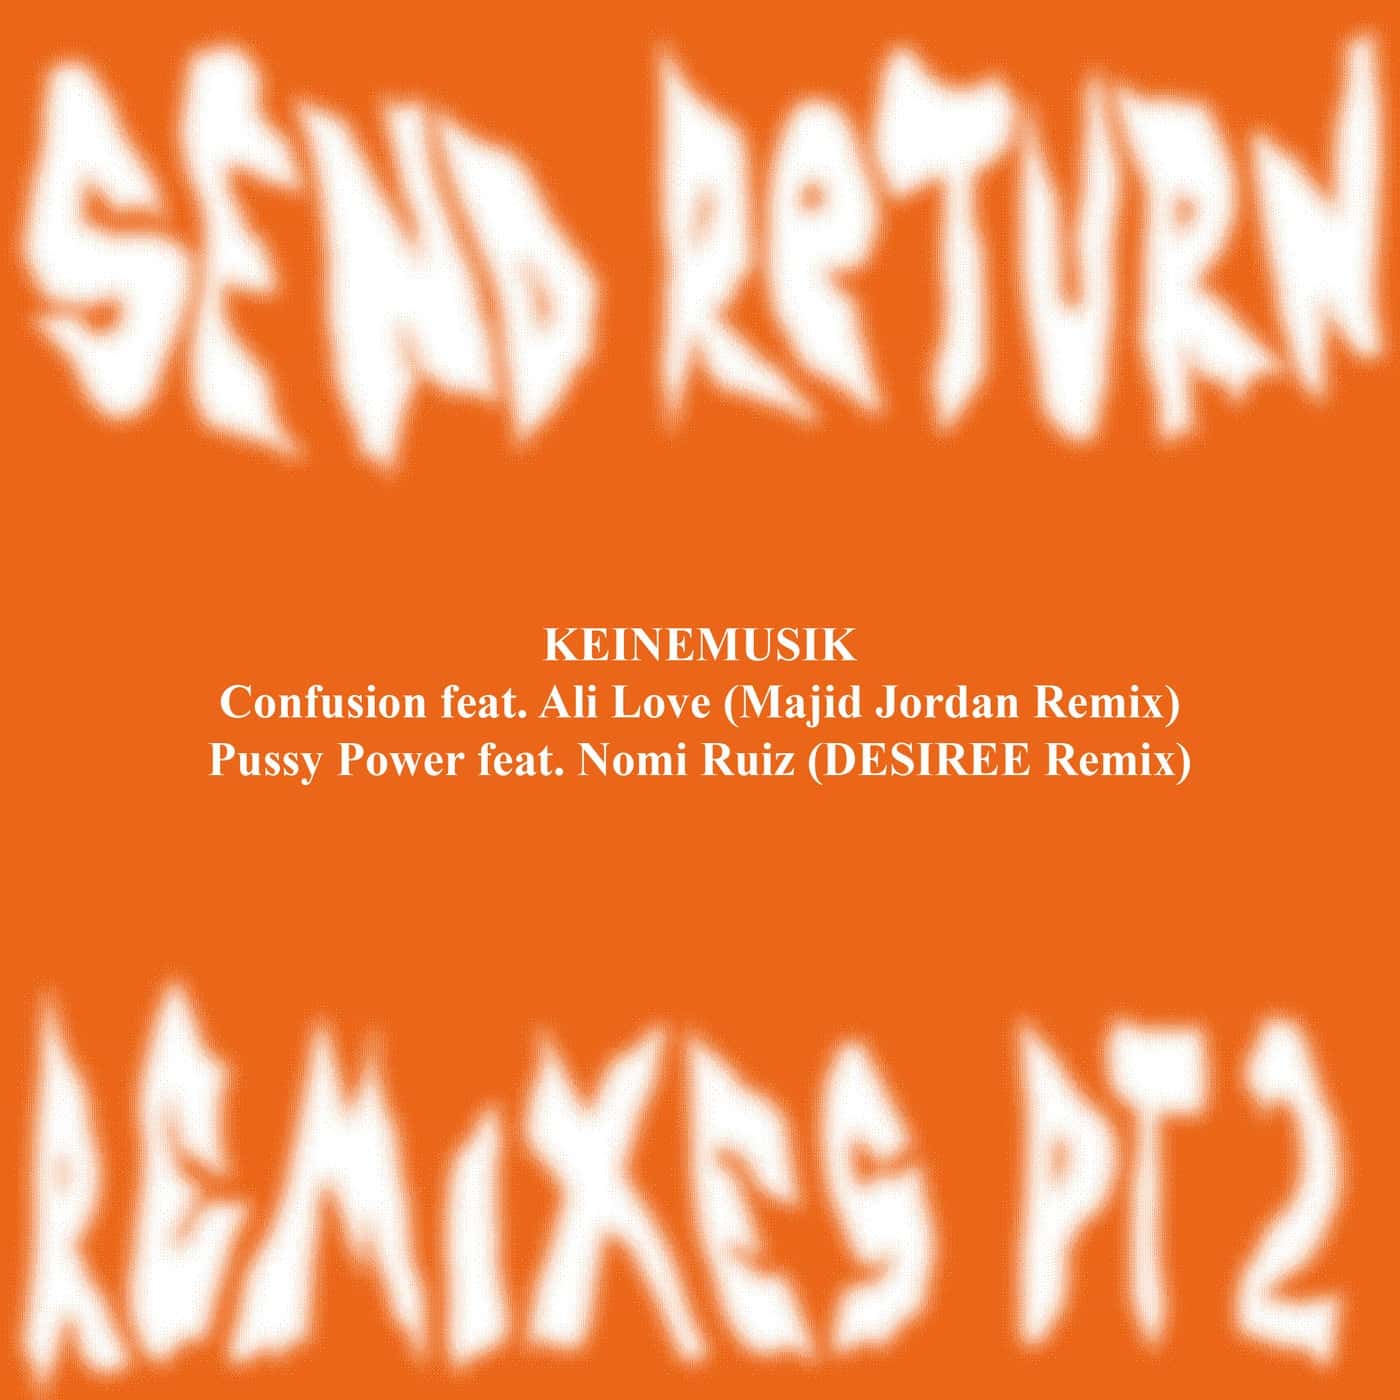 Download &ME, Rampa, Adam Port, Keinemusik - Send Return Remixes Pt. 2 (Full) on Electrobuzz